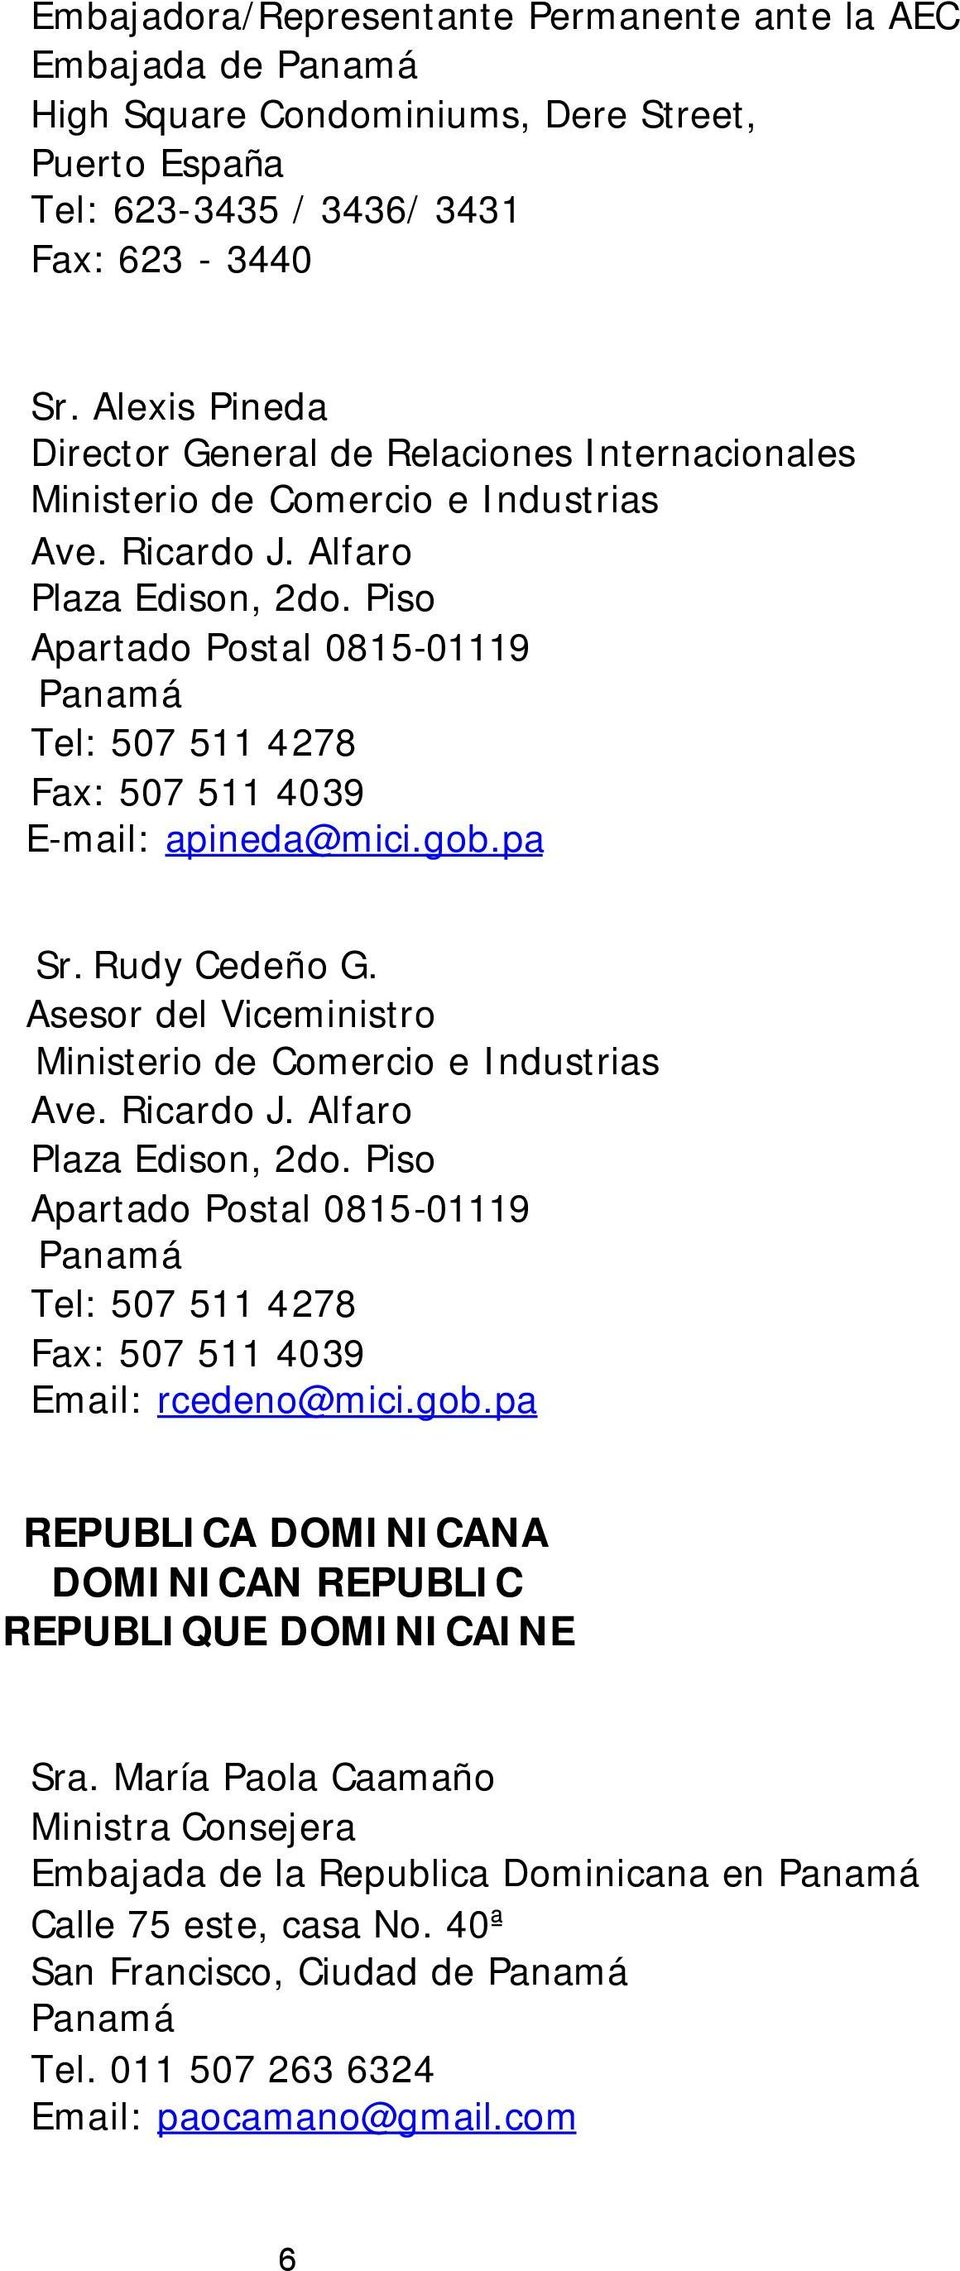 Asesor del Viceministro Email: rcedeno@mici.gob.pa REPUBLICA DOMINICANA DOMINICAN REPUBLIC REPUBLIQUE DOMINICAINE Sra.